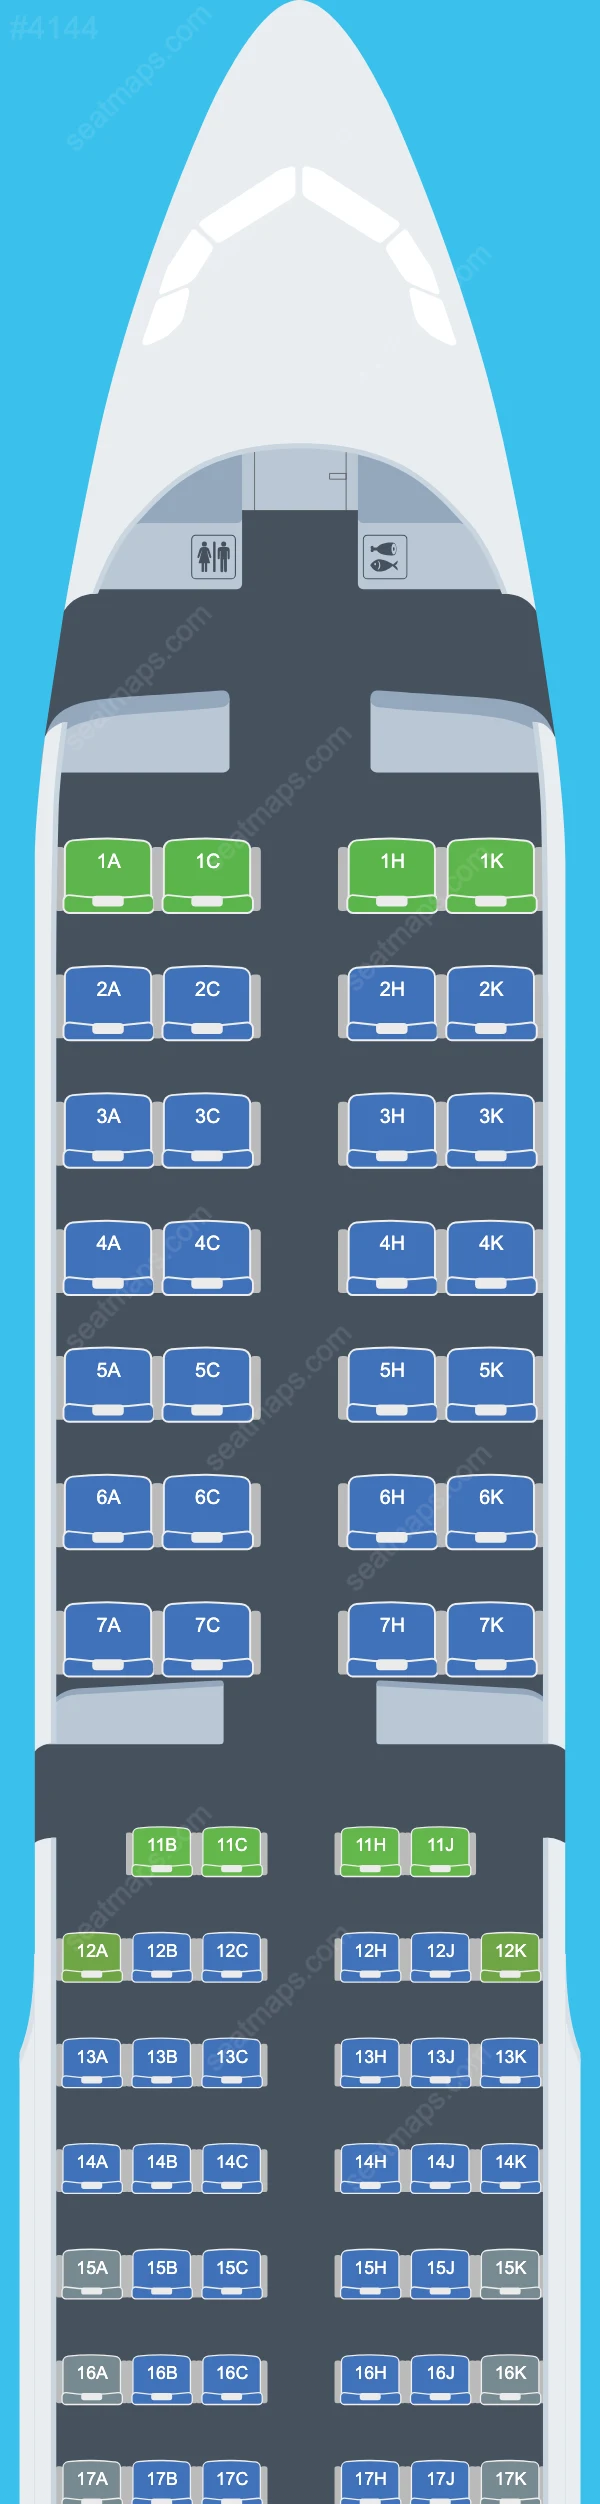 Air Astana Airbus A321 Seat Maps A321-200